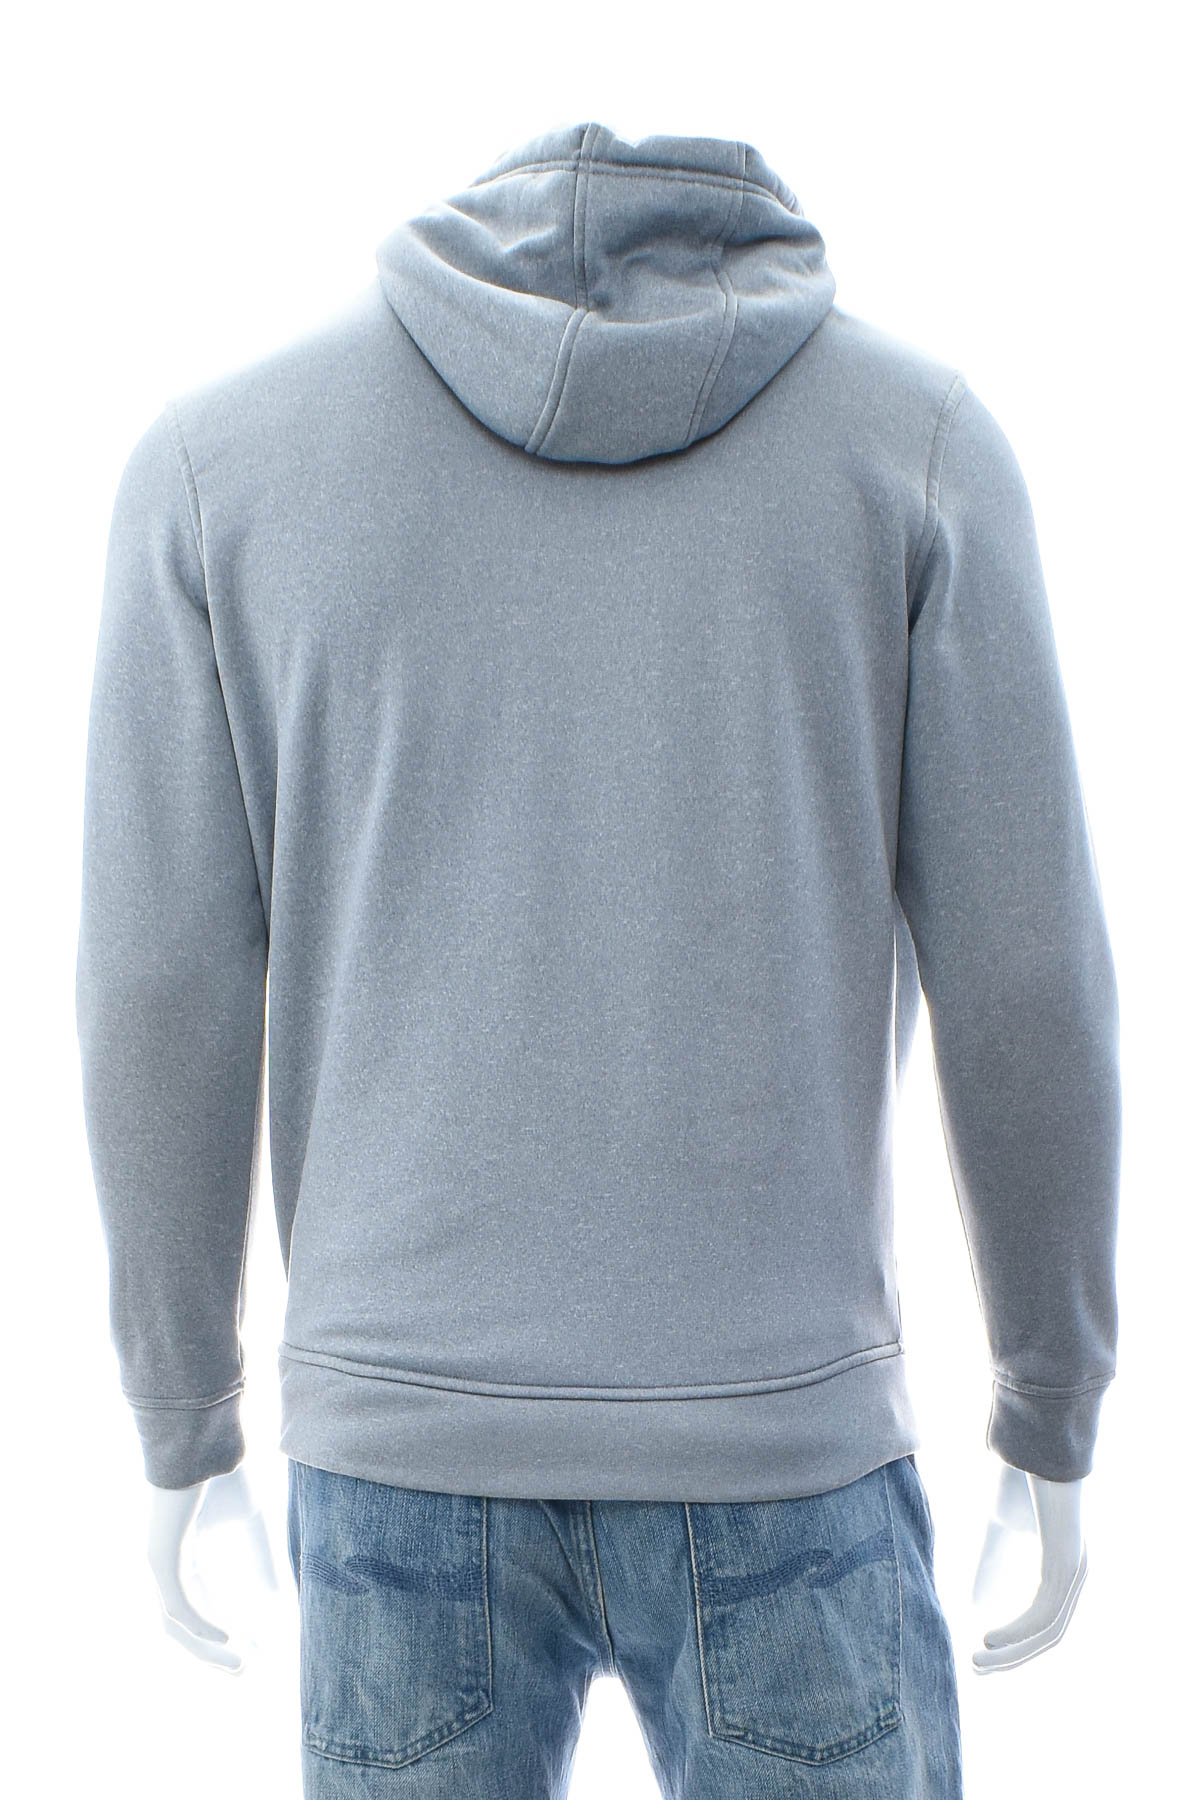 Men's sweatshirt - UNDER ARMOUR - 1